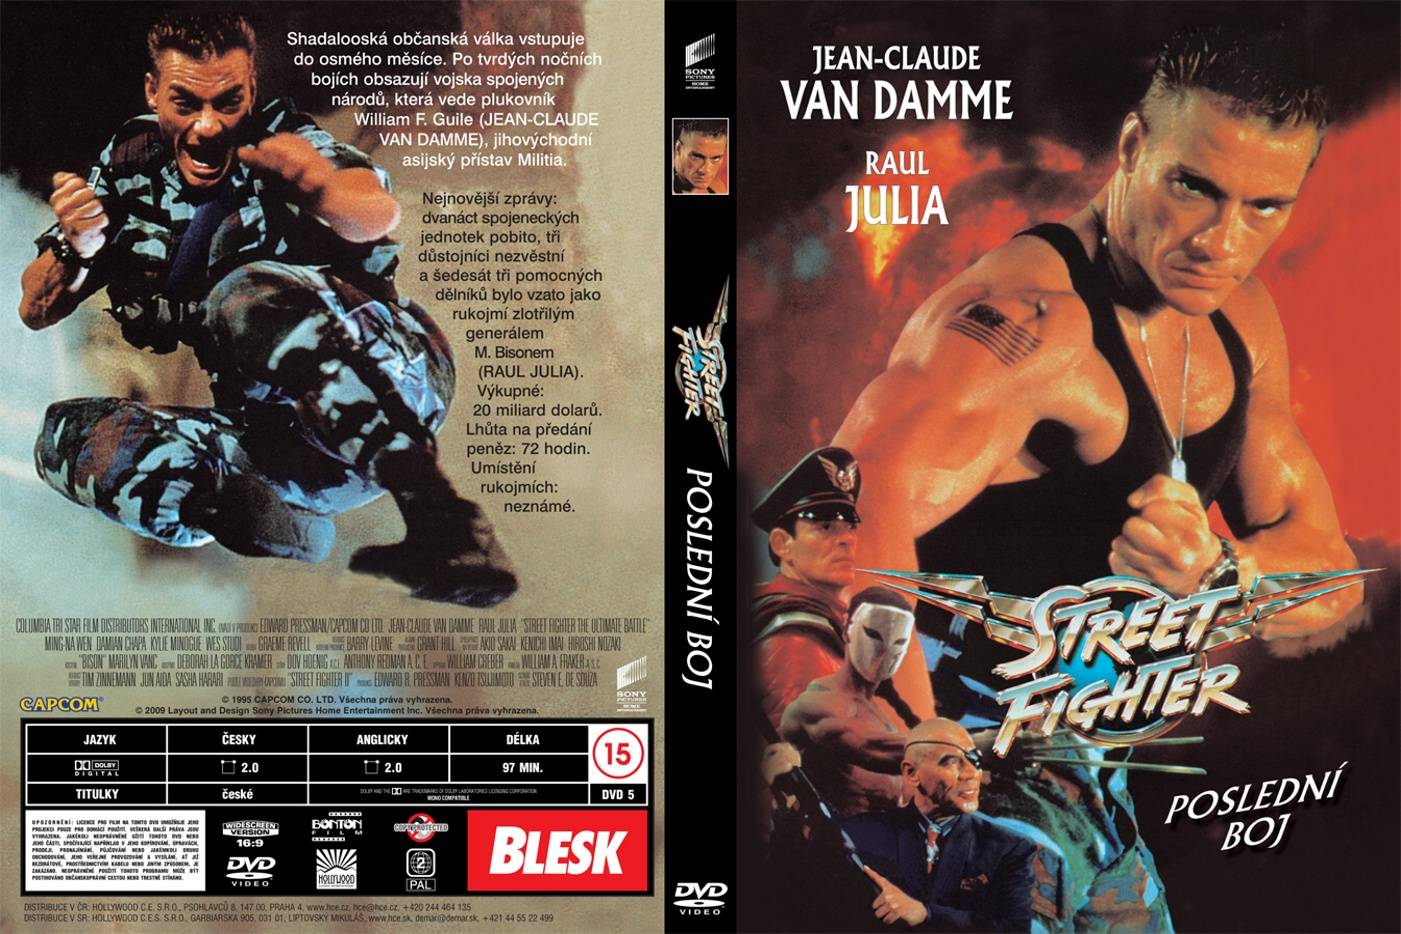 Jean Claude van Damme Collectie DvD 17 van 40 - Streetfighter